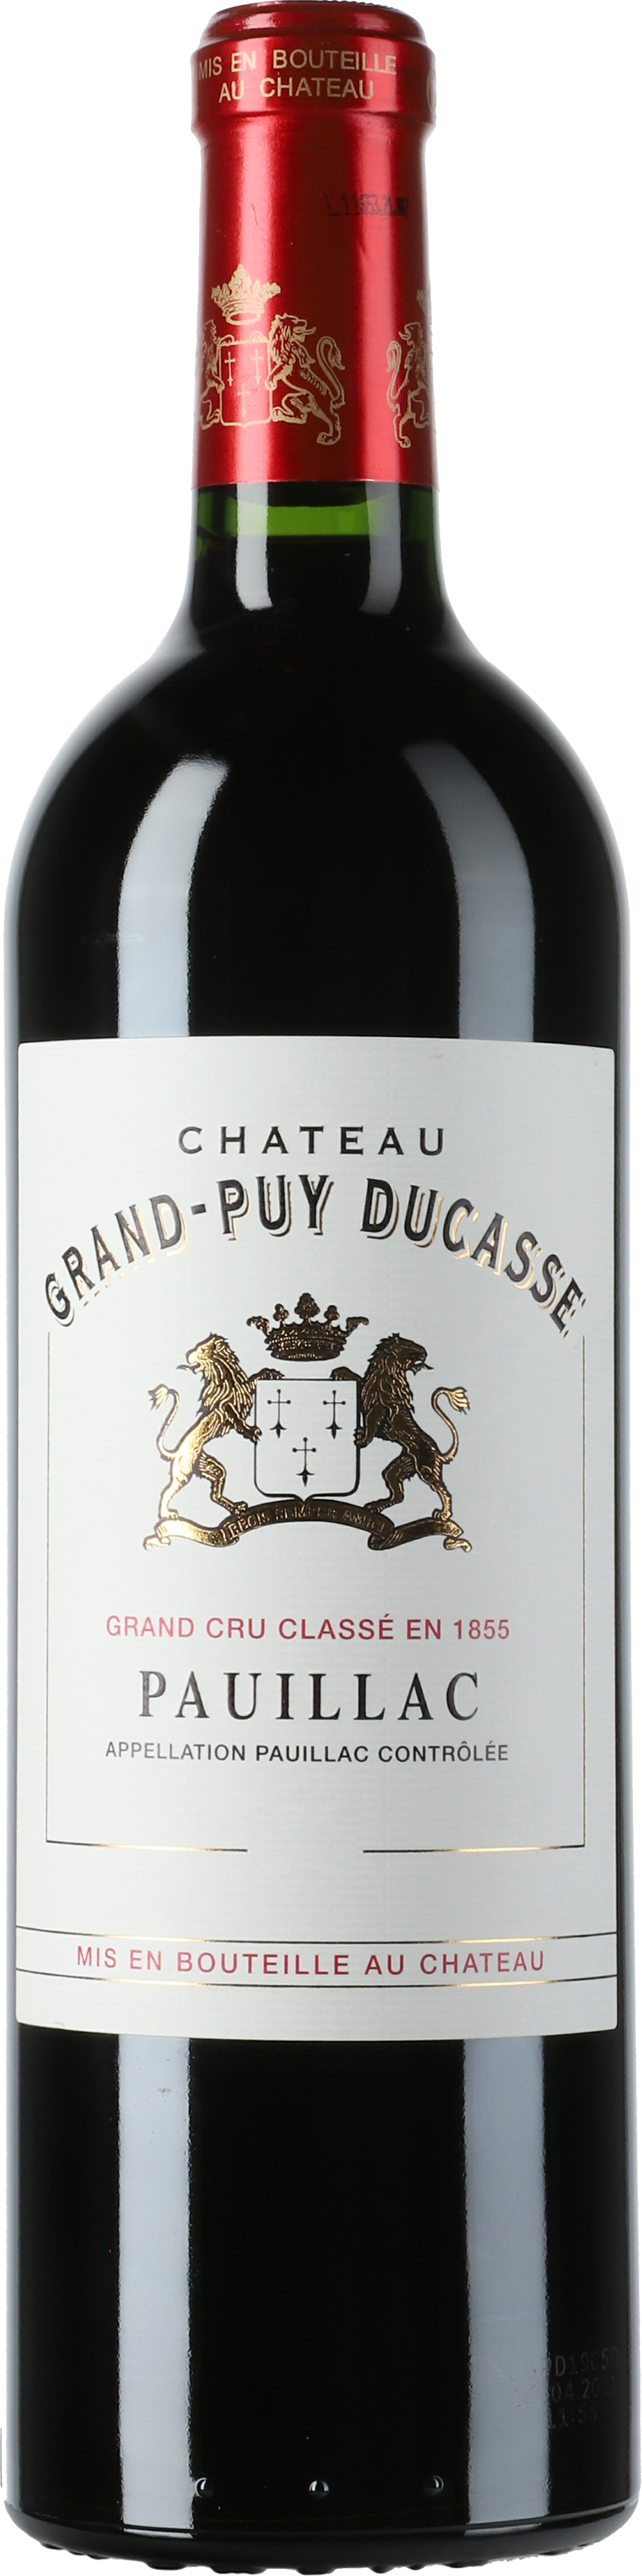 Chateau Grand Puy Ducasse 5eme Cru 2019 - Lobenbergs Gute Weine